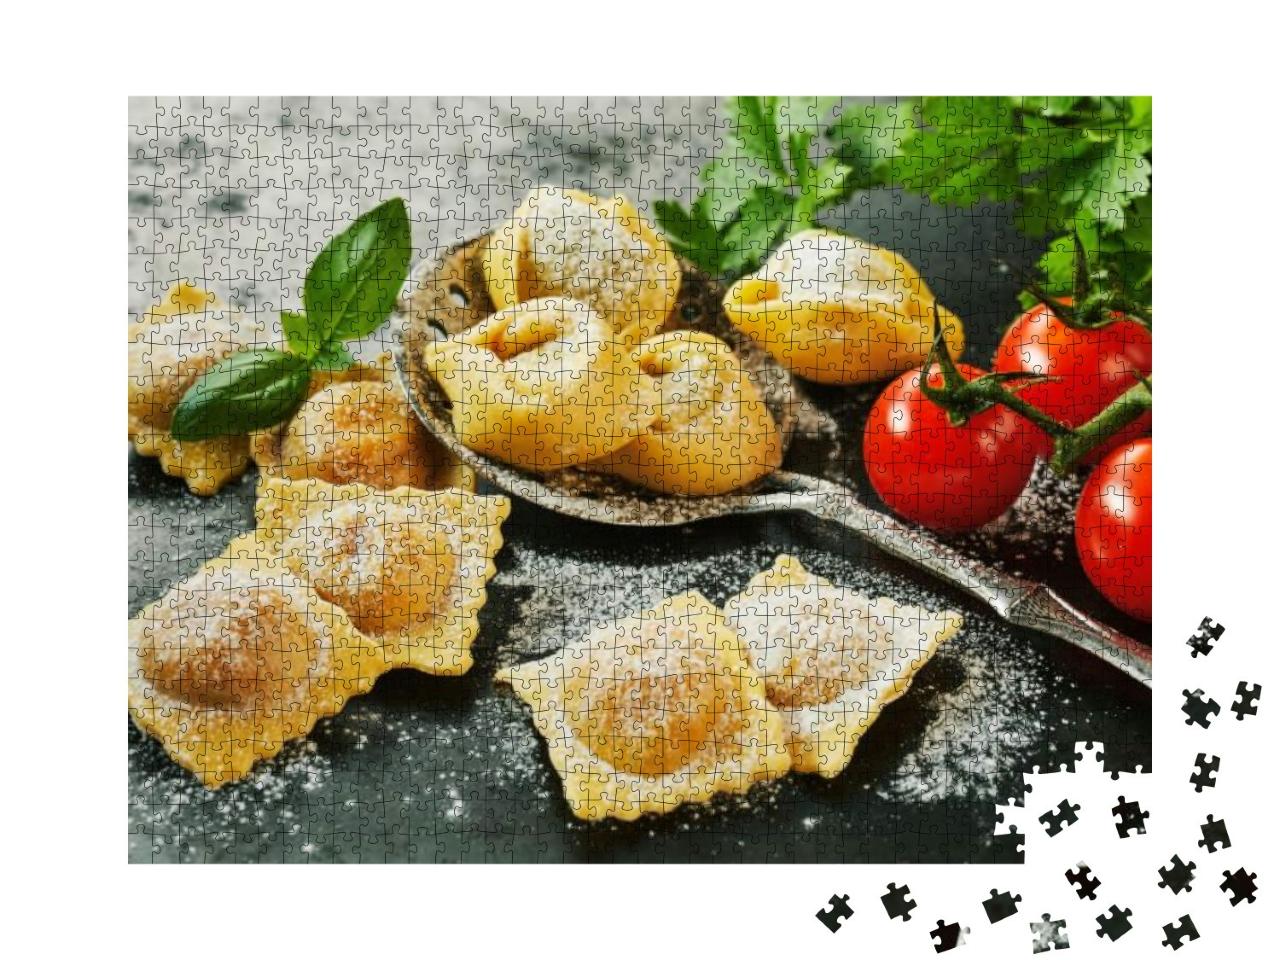 Puzzle 1000 Teile „Hausgemachte, frisch zubereitete italienische Ravioli und Tortellini“